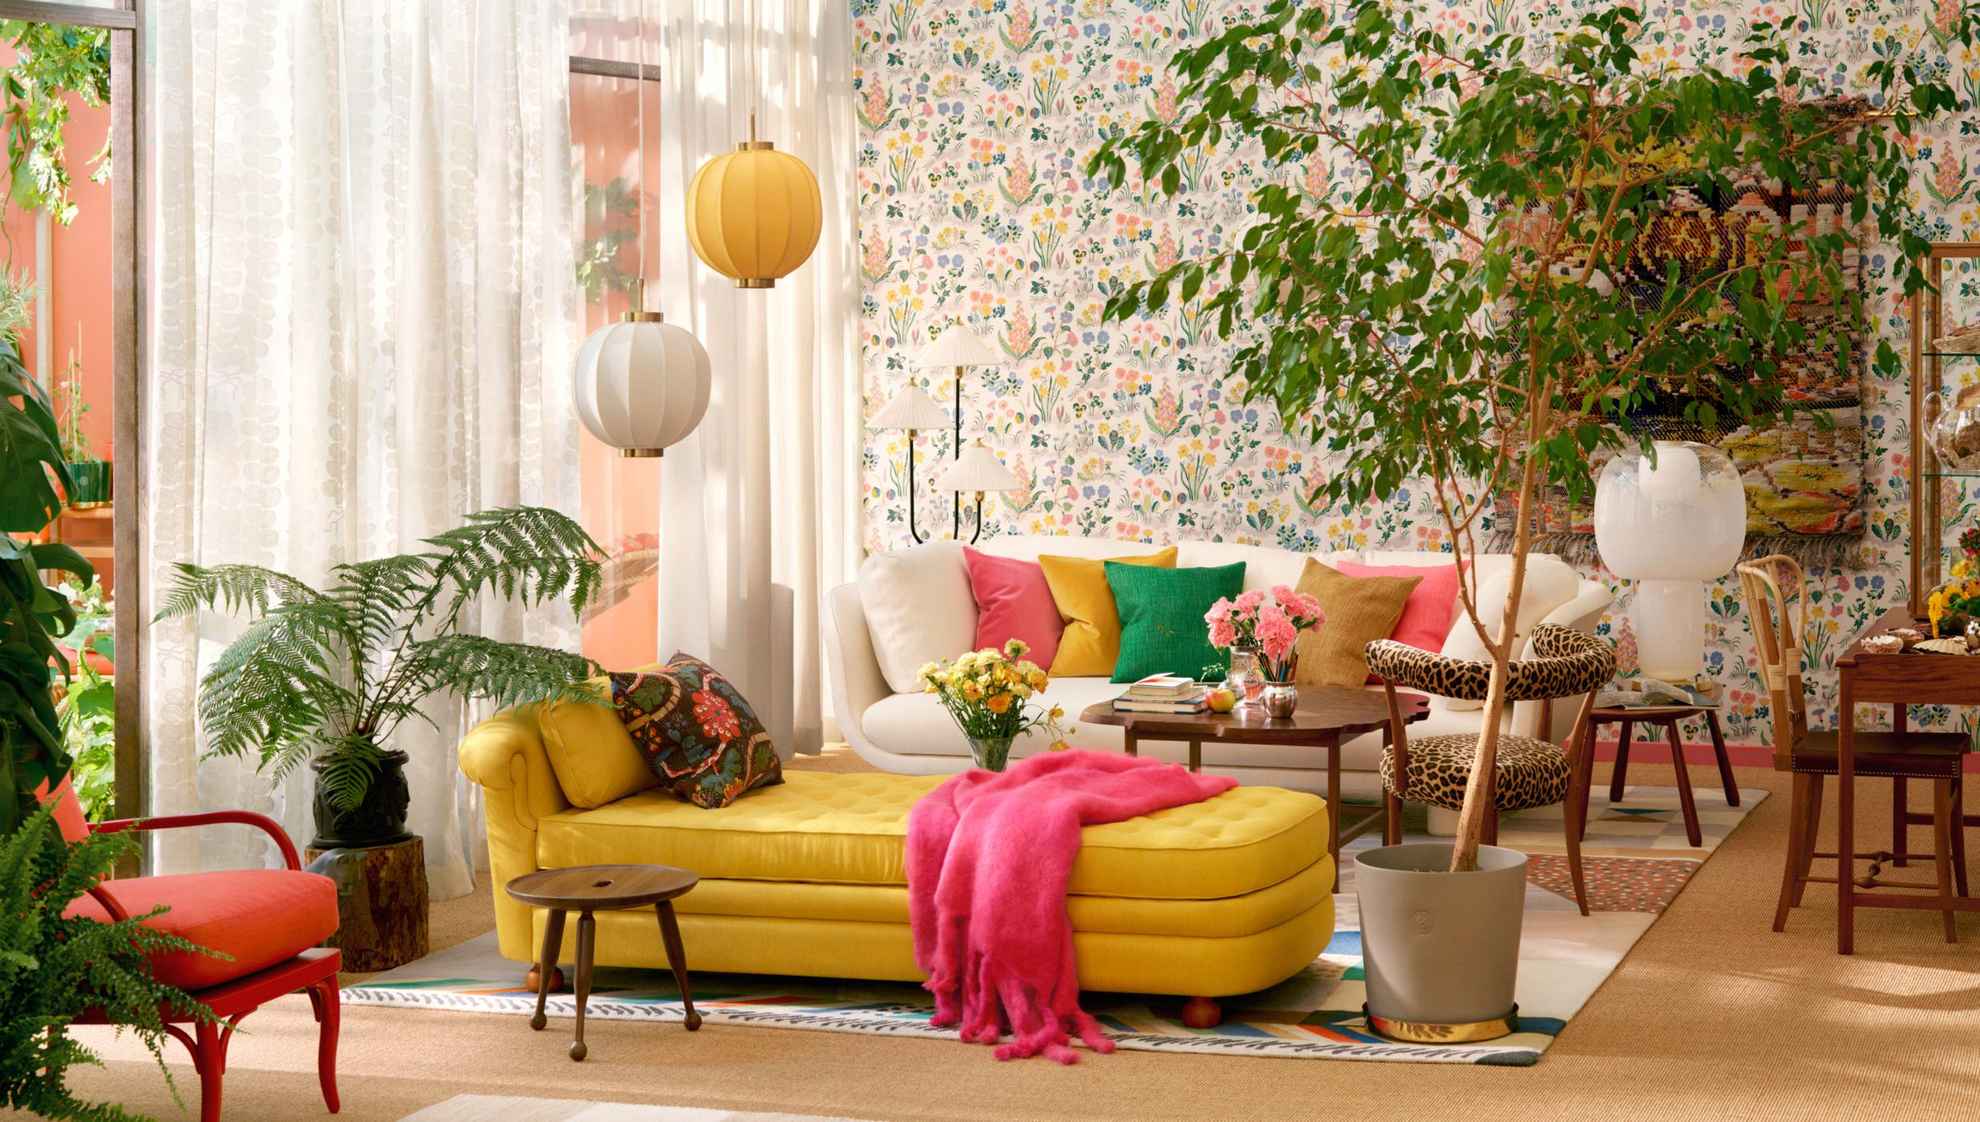 Ein Wohnzimmer mit einem beigen Sofa mit bunten Kissen im hinteren Bereich und einer gelben Chaiselongue in der Mitte des Raums. Rechts von der Chaiselongue steht eine große grüne Bodenpflanze. Die durchsichtigen weißen Vorhänge lassen natürliches Licht herein.